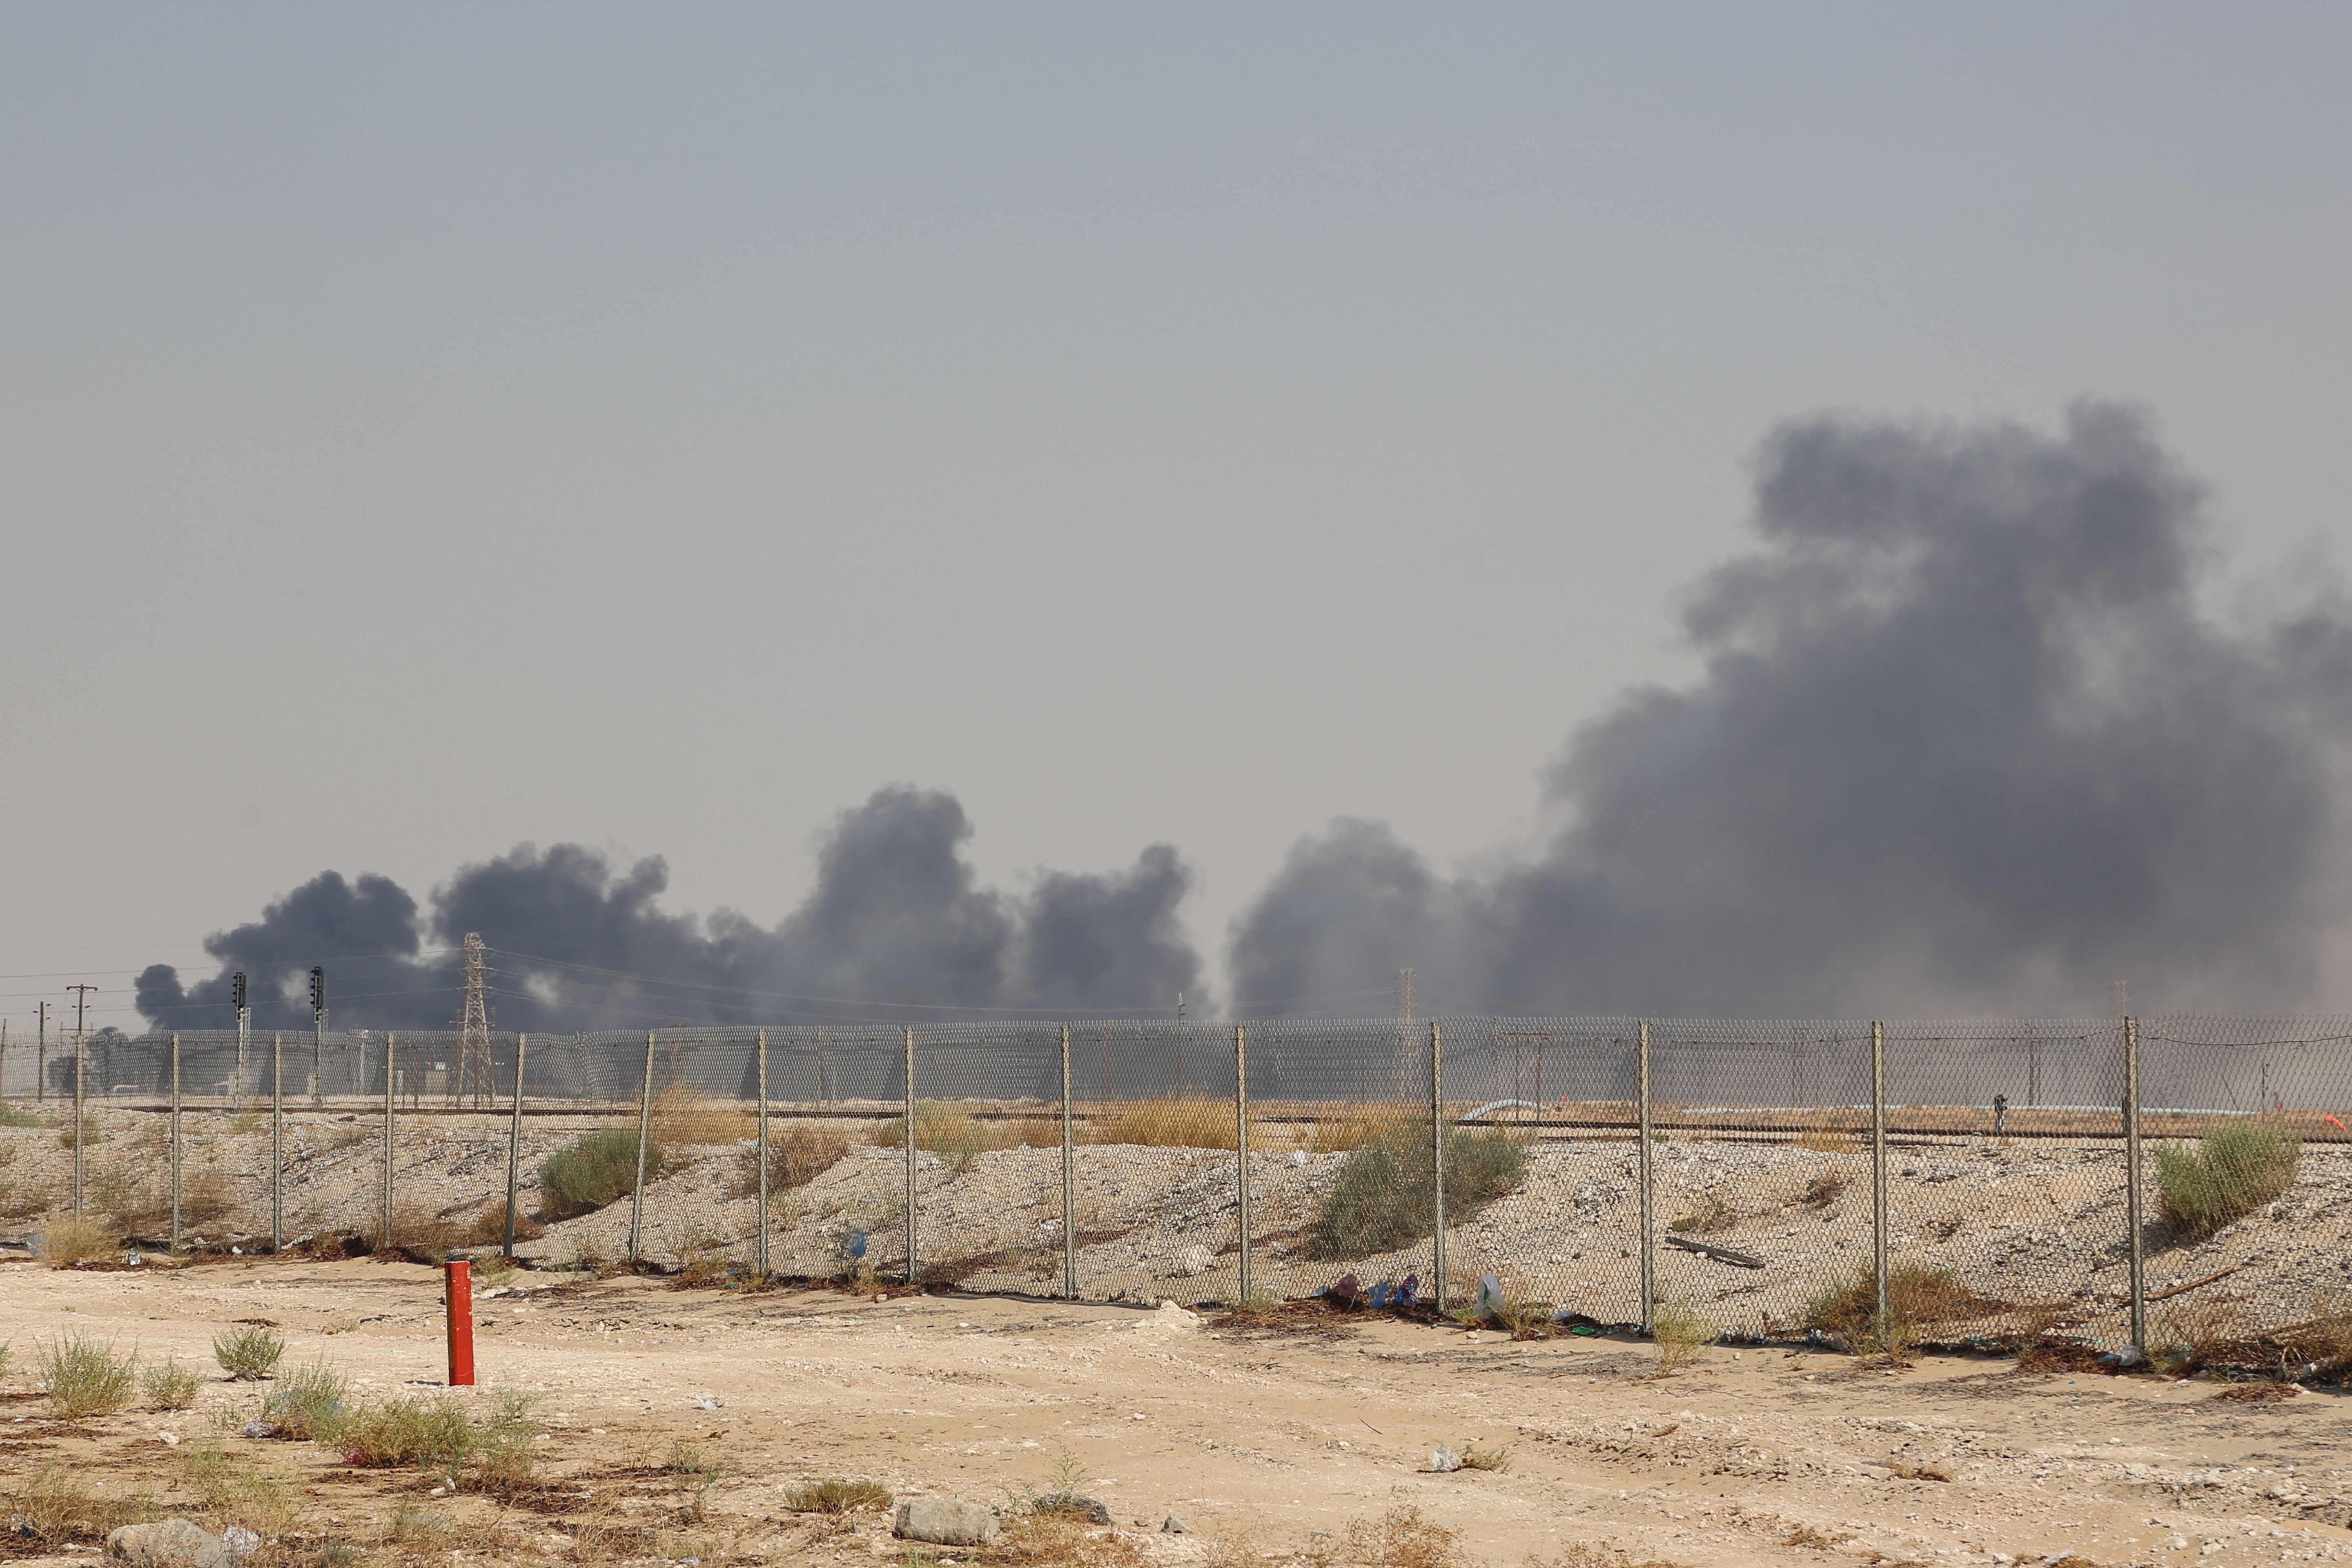 Нападение дронов на нпз. Атака дронов на НПЗ Саудовской Аравии. Нефтеперерабатывающий завод в Саудовской Аравии. Нефтехранилище Саудовская Аравия. Атака на нефтезаводы в Саудовской Аравии.